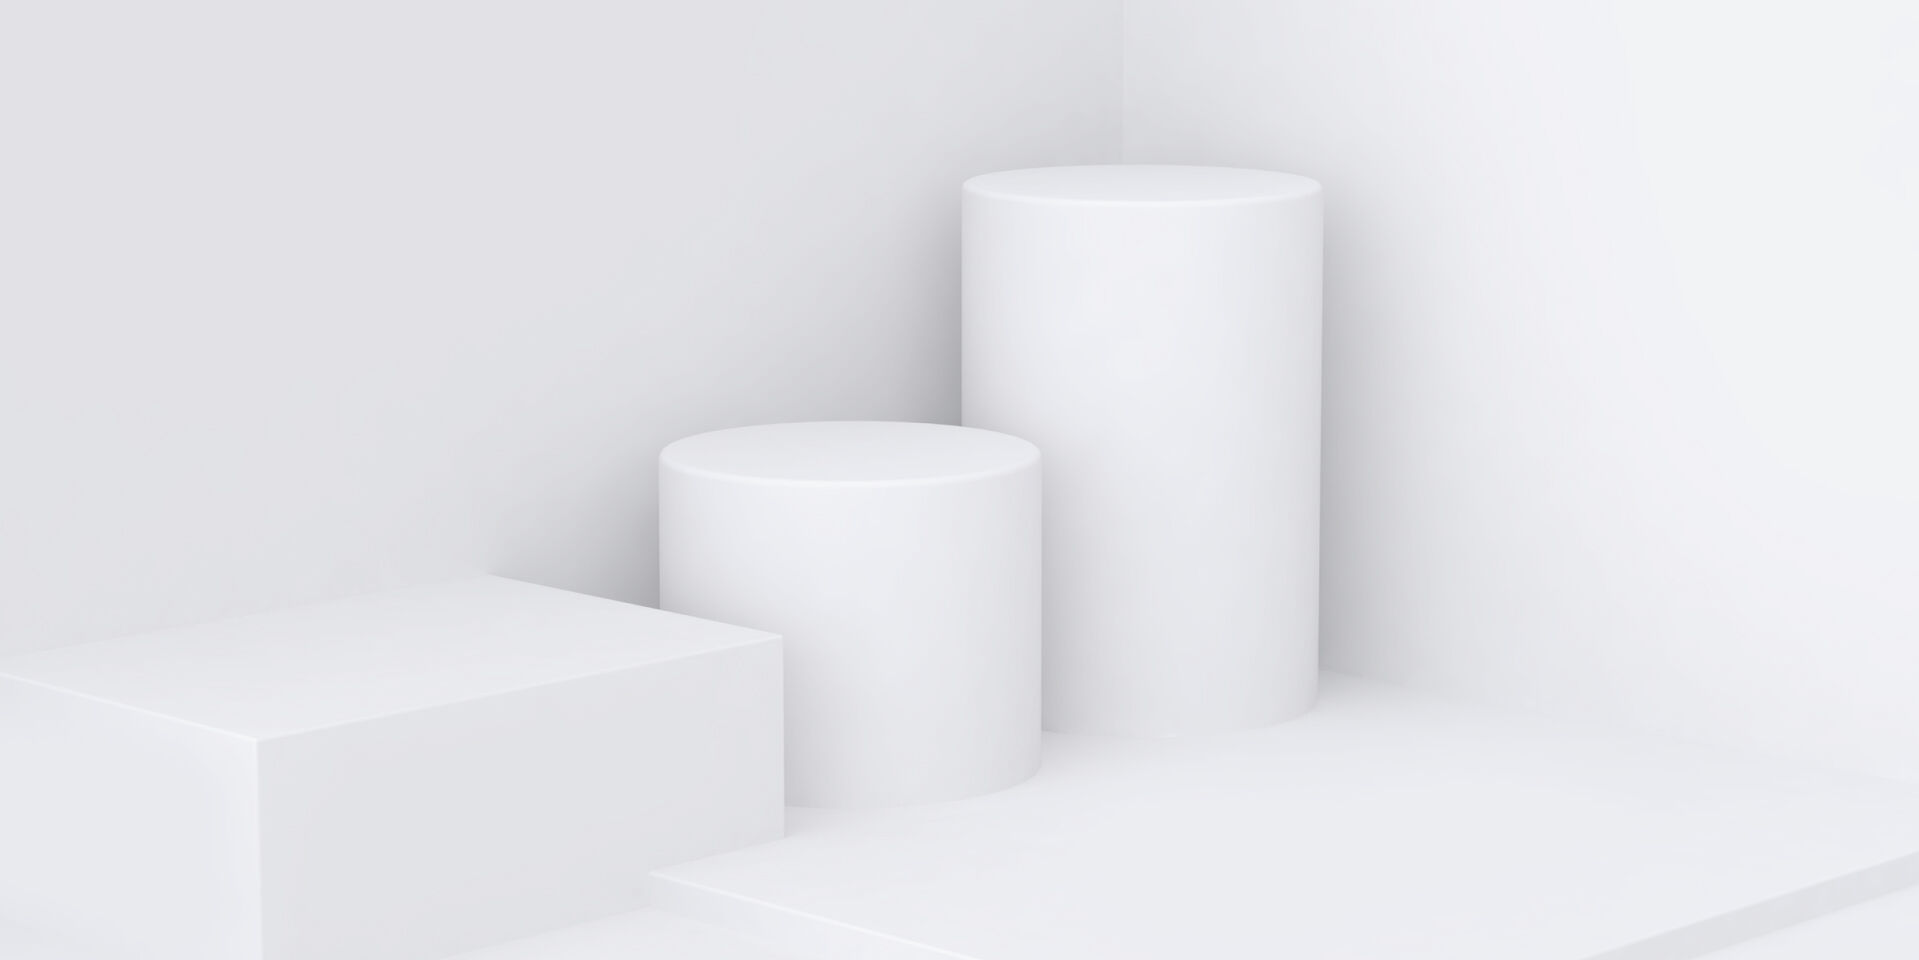 Eine abstrakte Abbildung von verschiedenen 3D-förmigen Objekten auf einem weißen Hintergrund